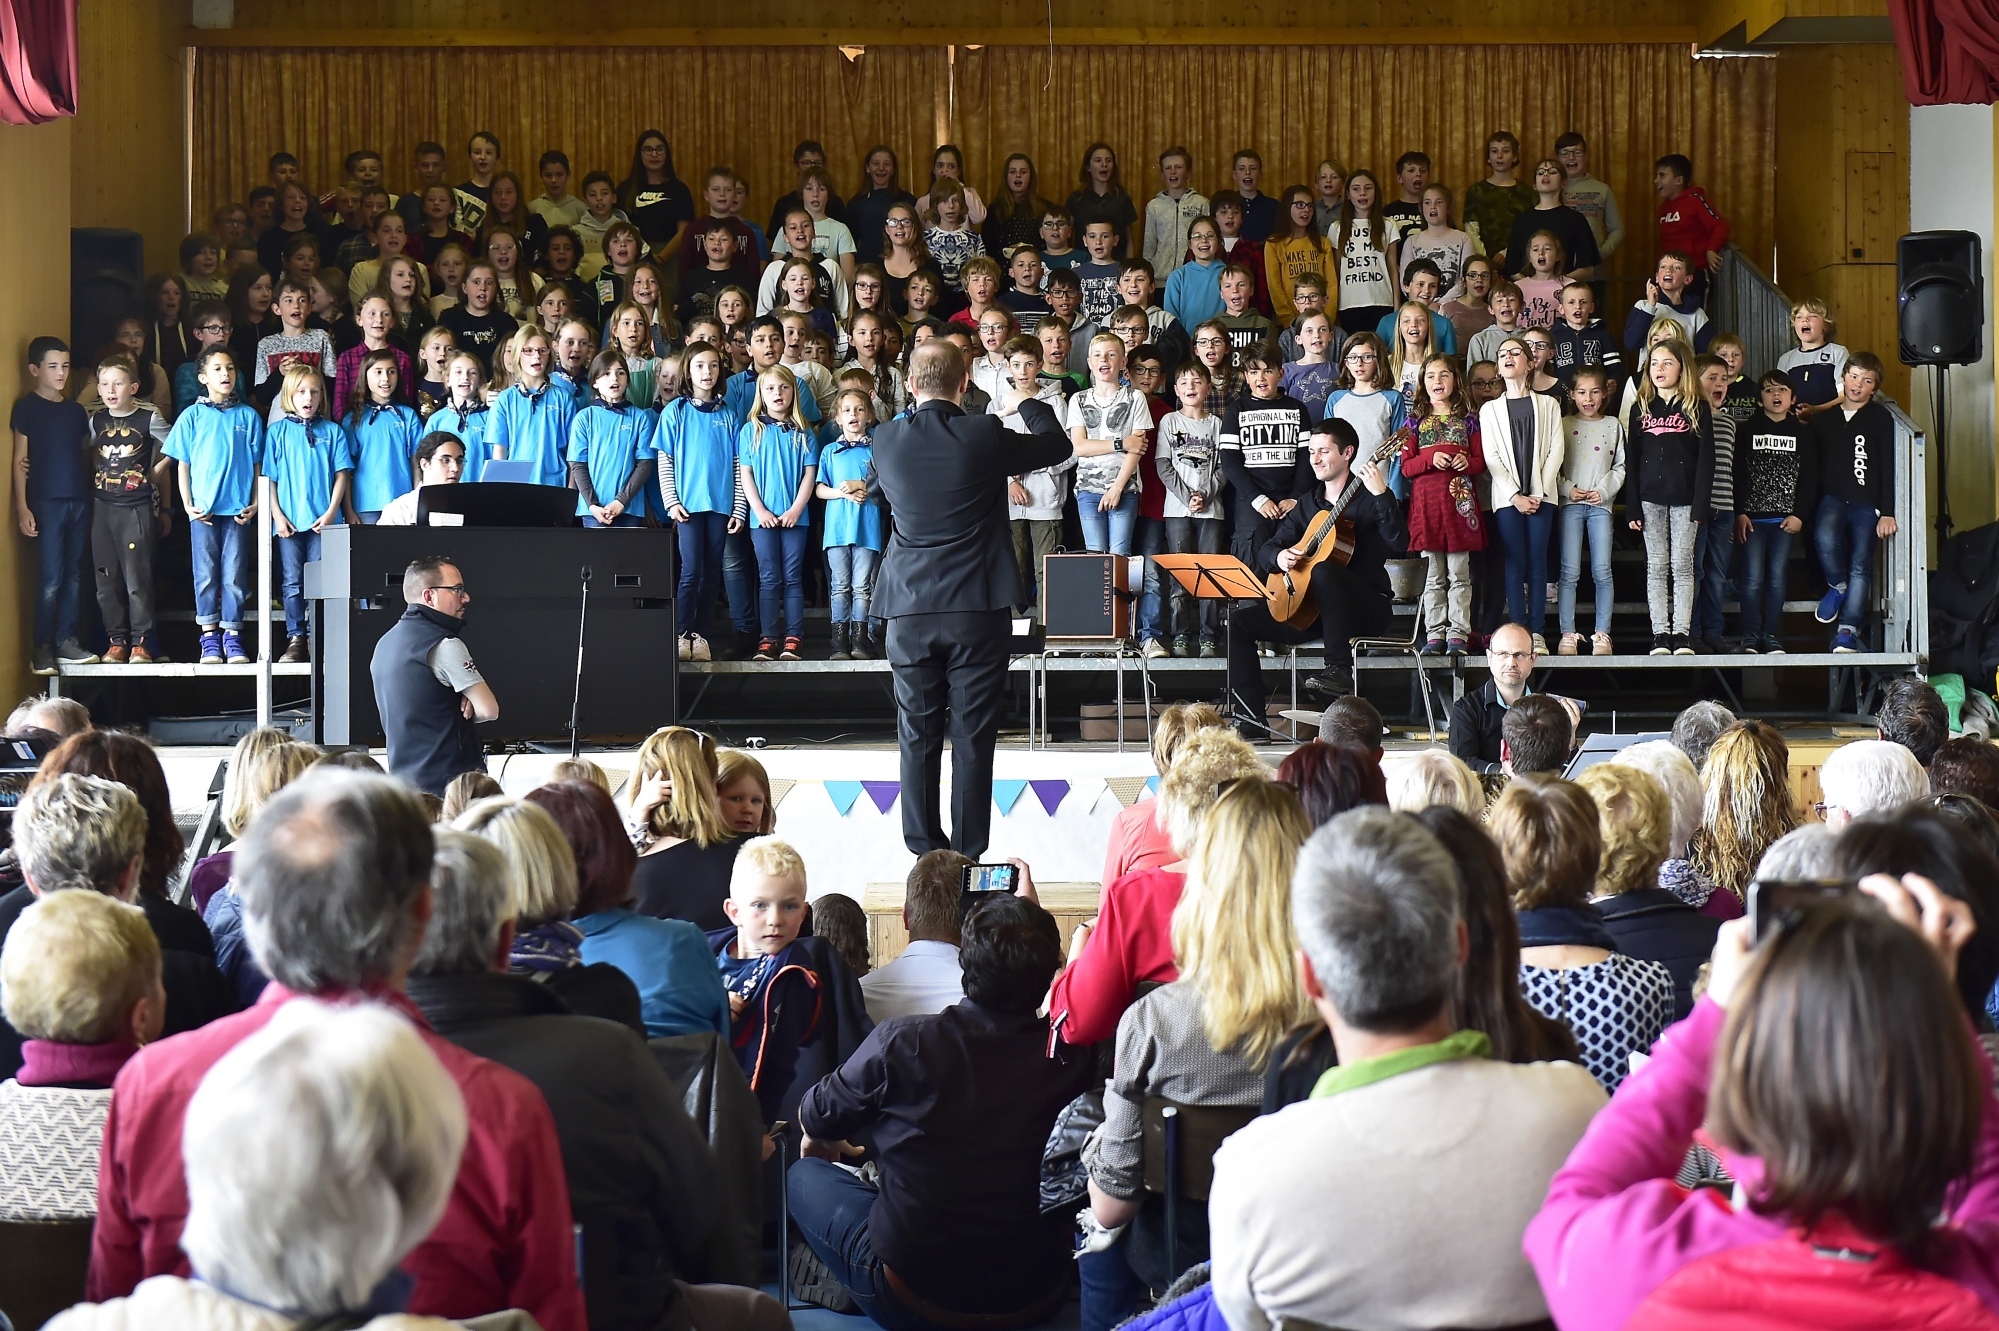 A Veysonnaz, les enfants ont offert au public un moment musical inoubliable avec le concert de l'Atelier B, dirigé par Mathieu Constantin lors du 58e festival de l'Union chorale du Centre.